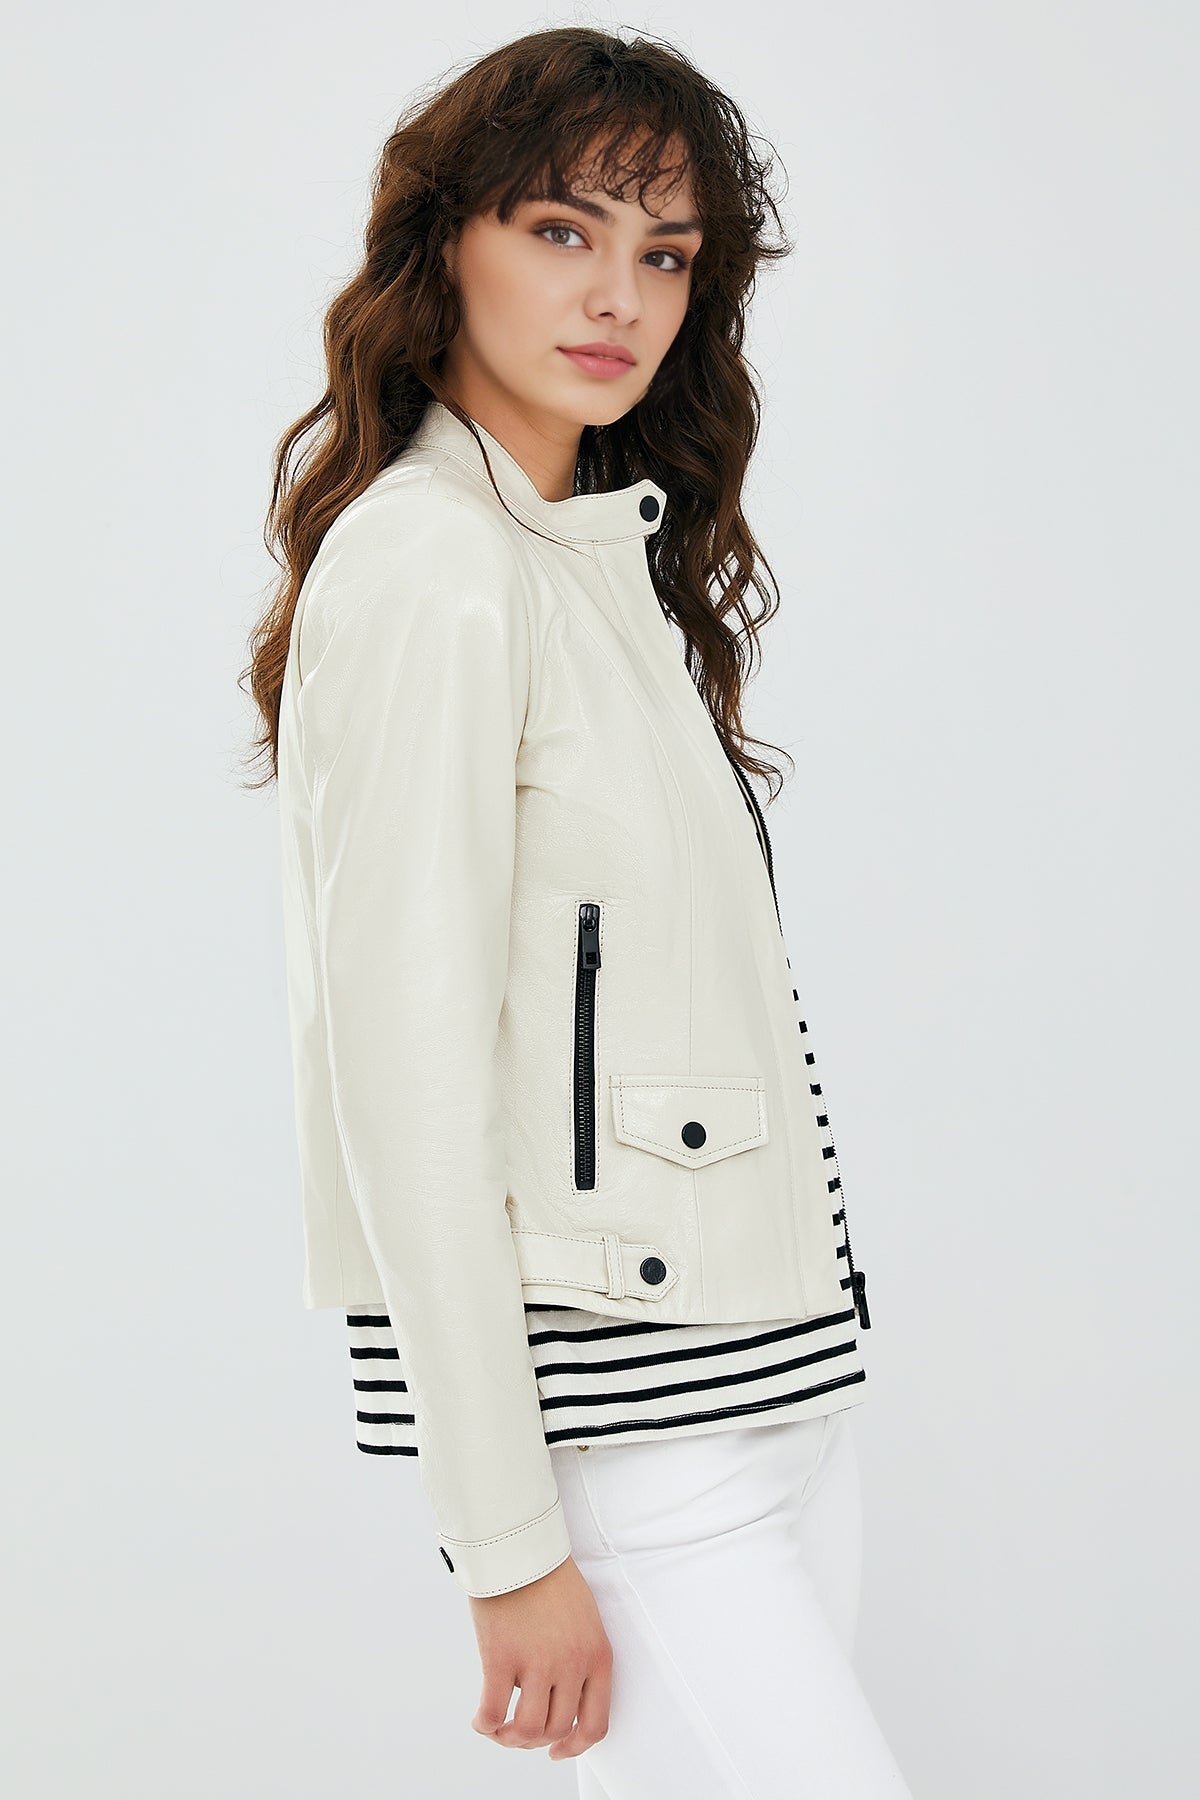 Daphne Women's White Leather Jacket